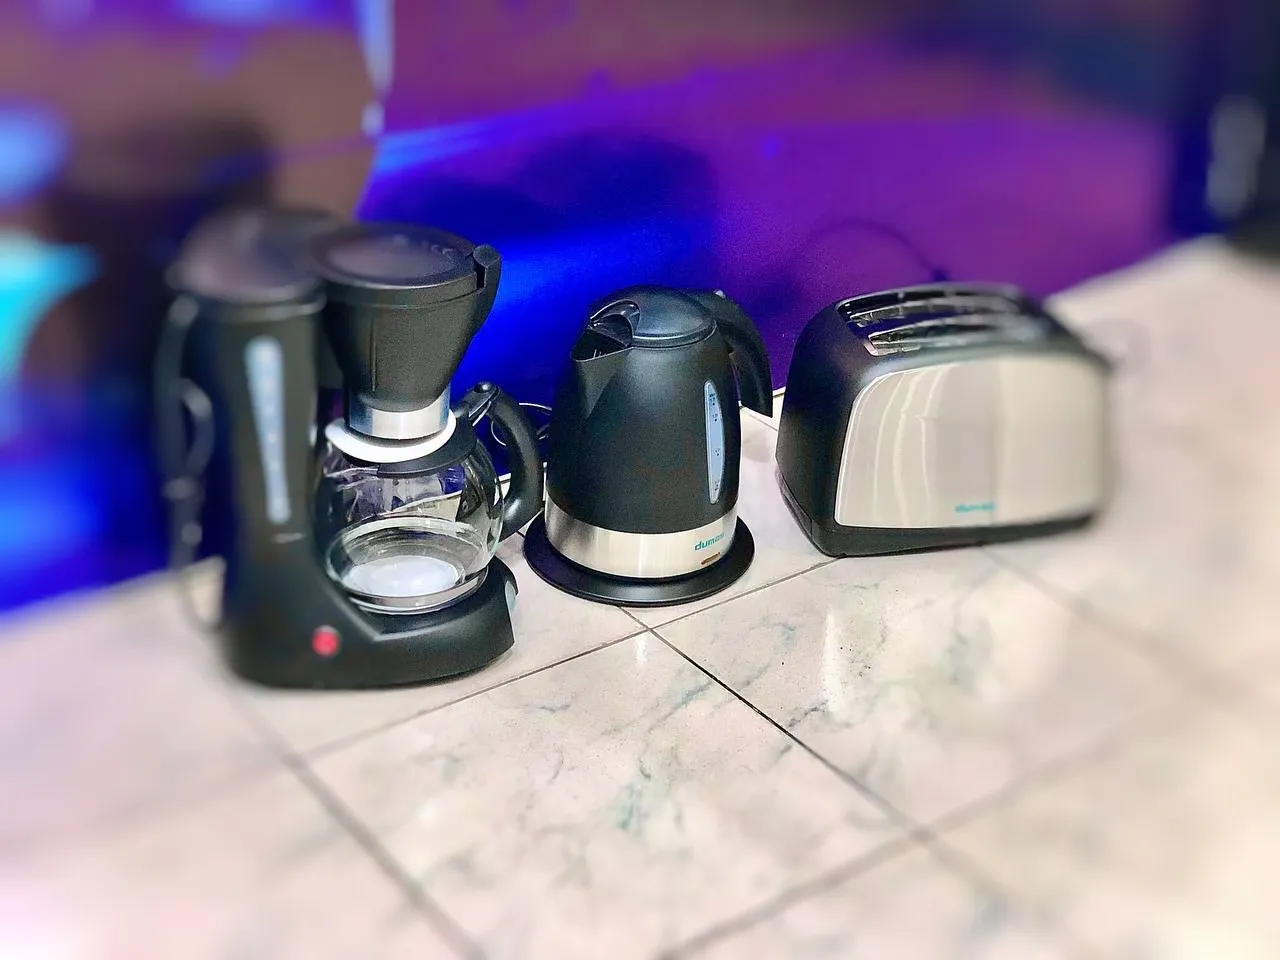 Электрочайник + кофеварка + тостер от DUMAS. Идеальный набор для завтраков.#6